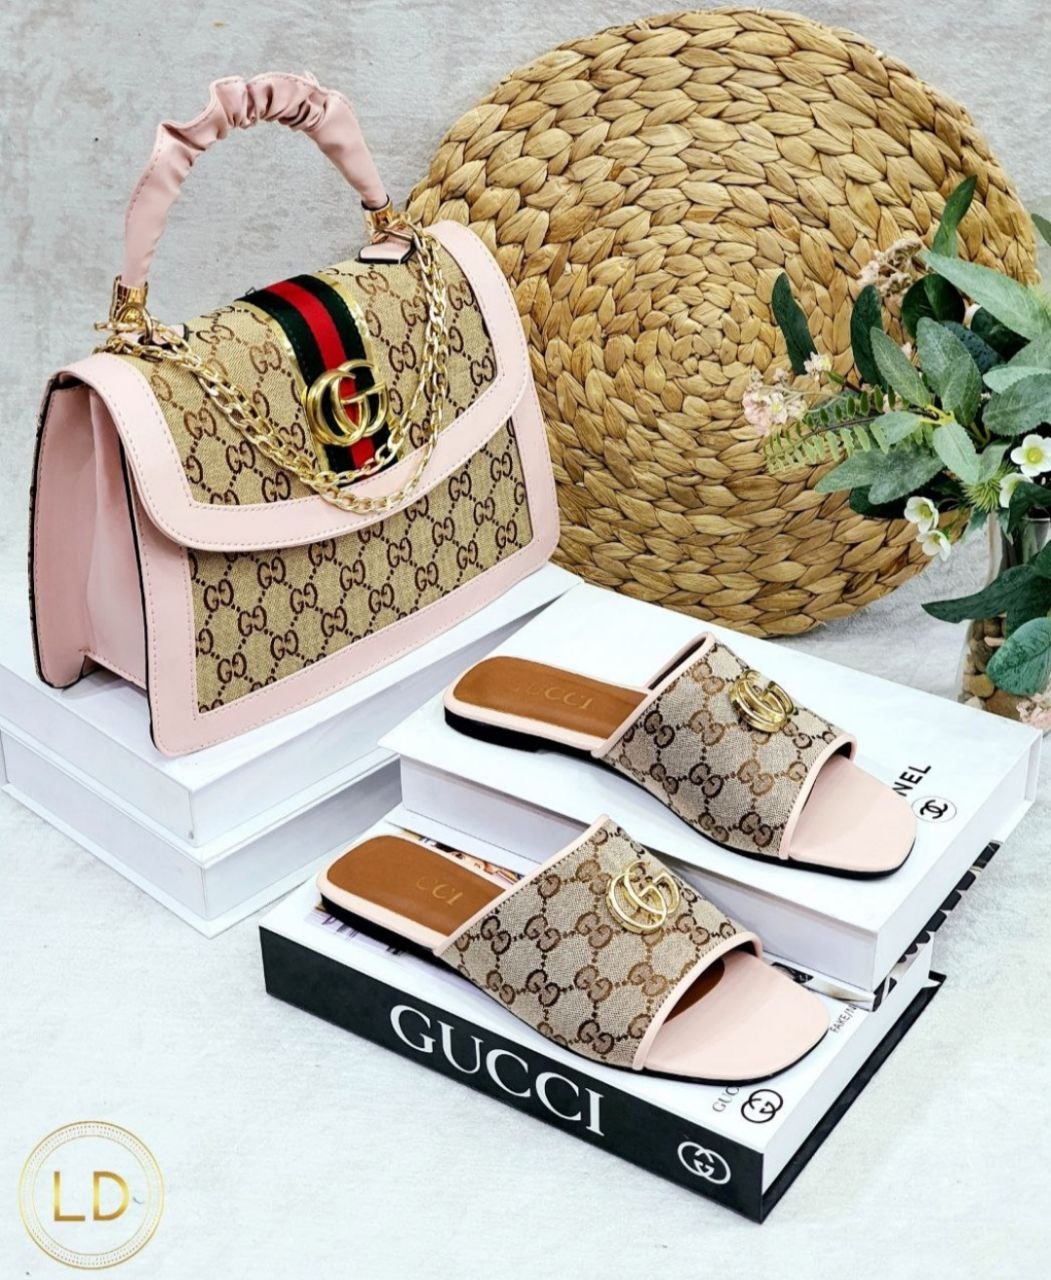 Gucci sandals and handbag set